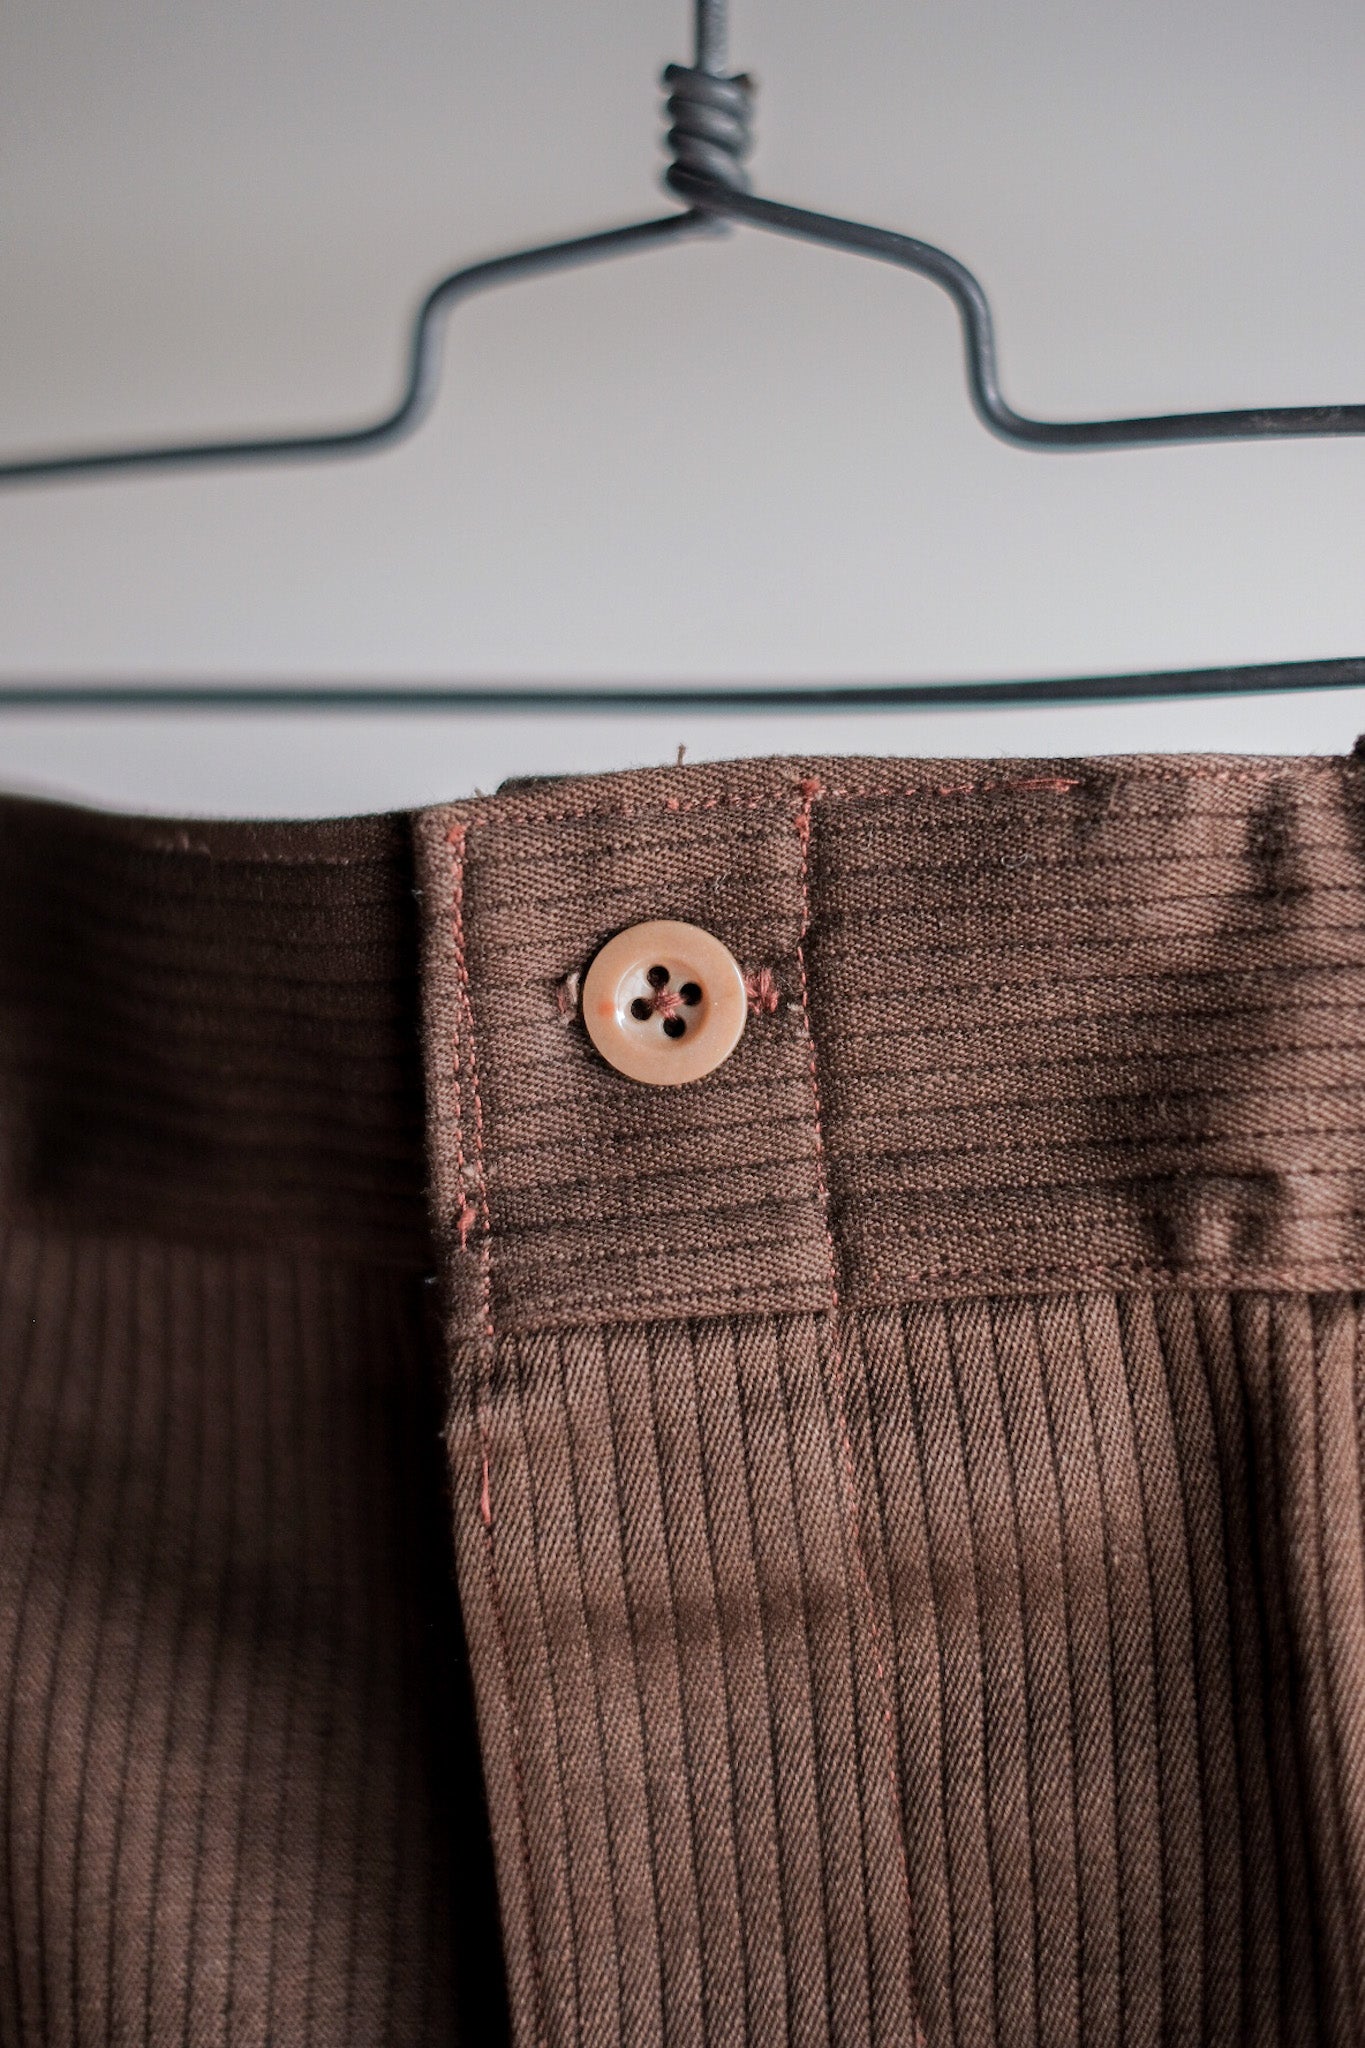 [~ 50's] Pantalon de travail de coton brun vintage français "Stock mort"